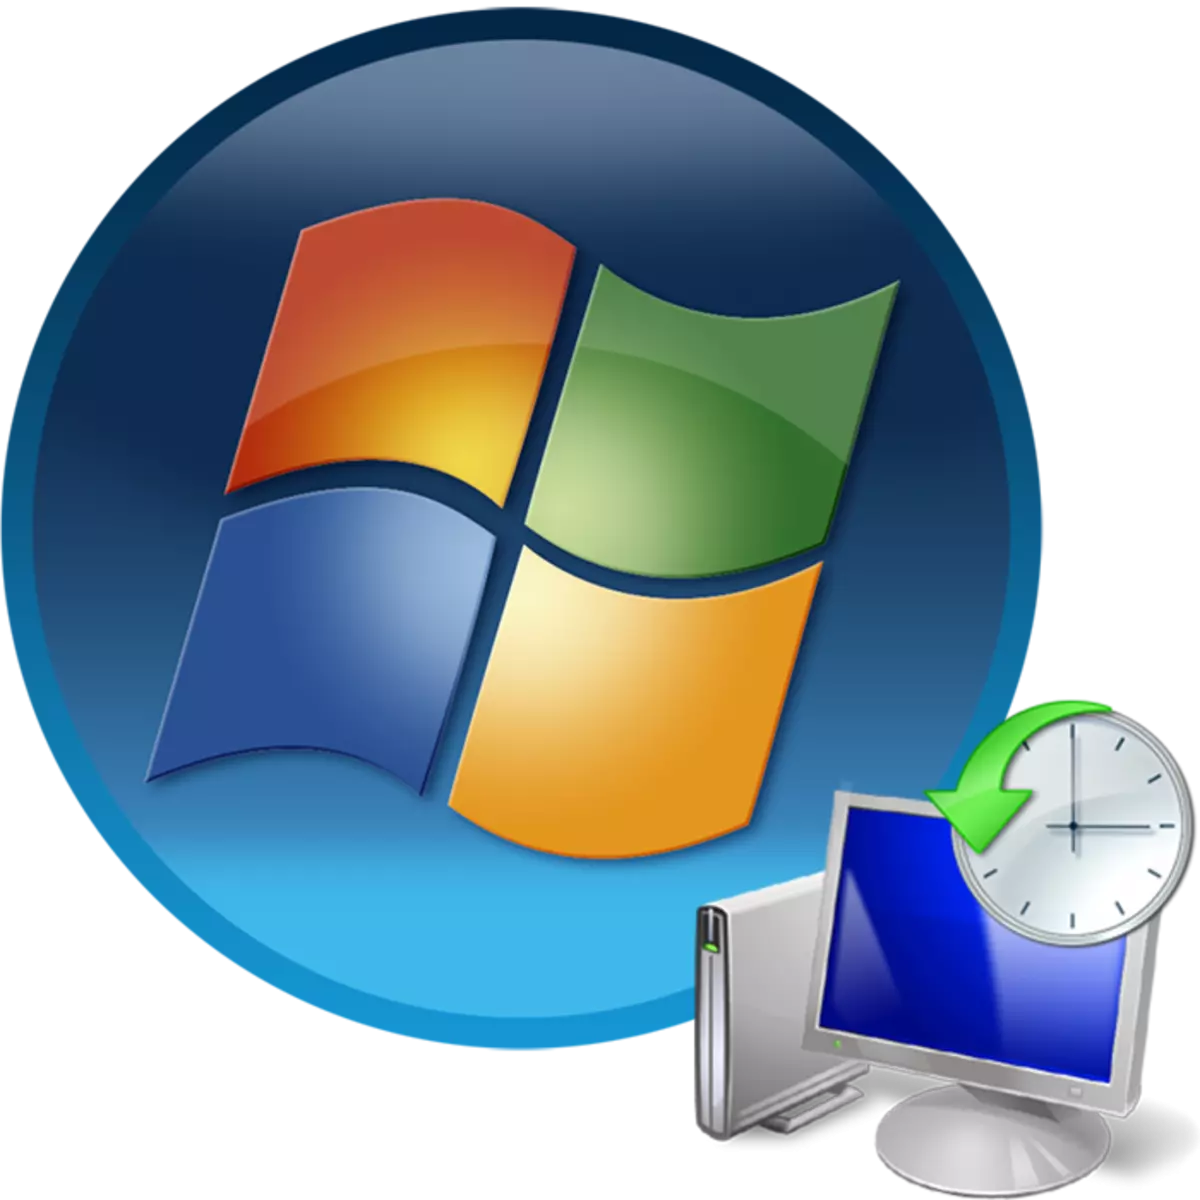 Kumaha carana miceun titik pamulihan dina Windows 7